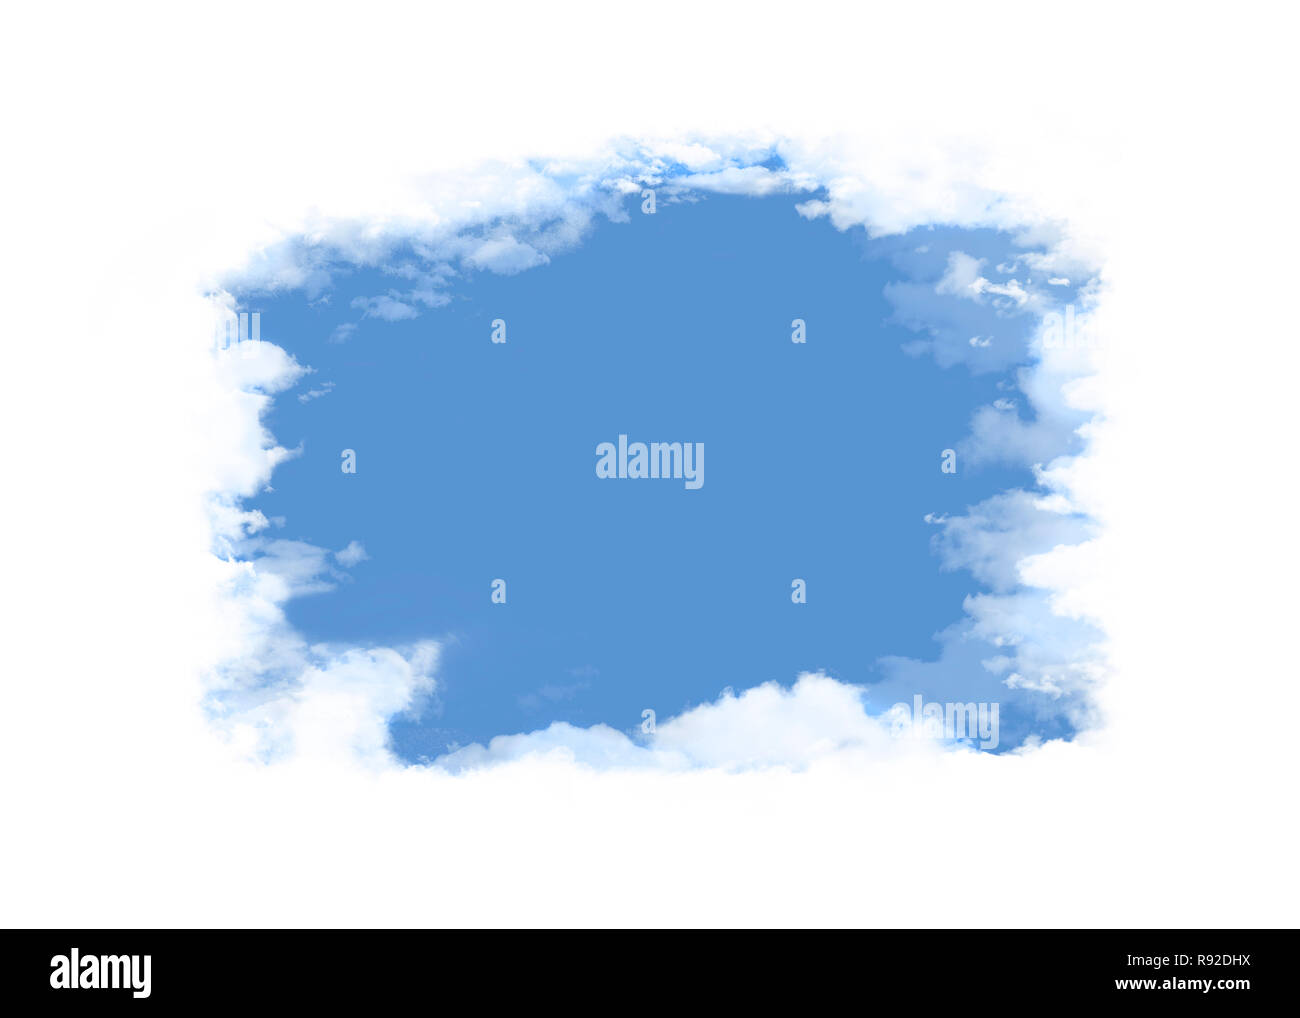 Flauschigen weißen Wolken umgeben einen Öffnung, zeigt klare blaue Himmel, wo grafische Elemente oder Text platziert werden können. Dies ist eine Abbildung. Stockfoto